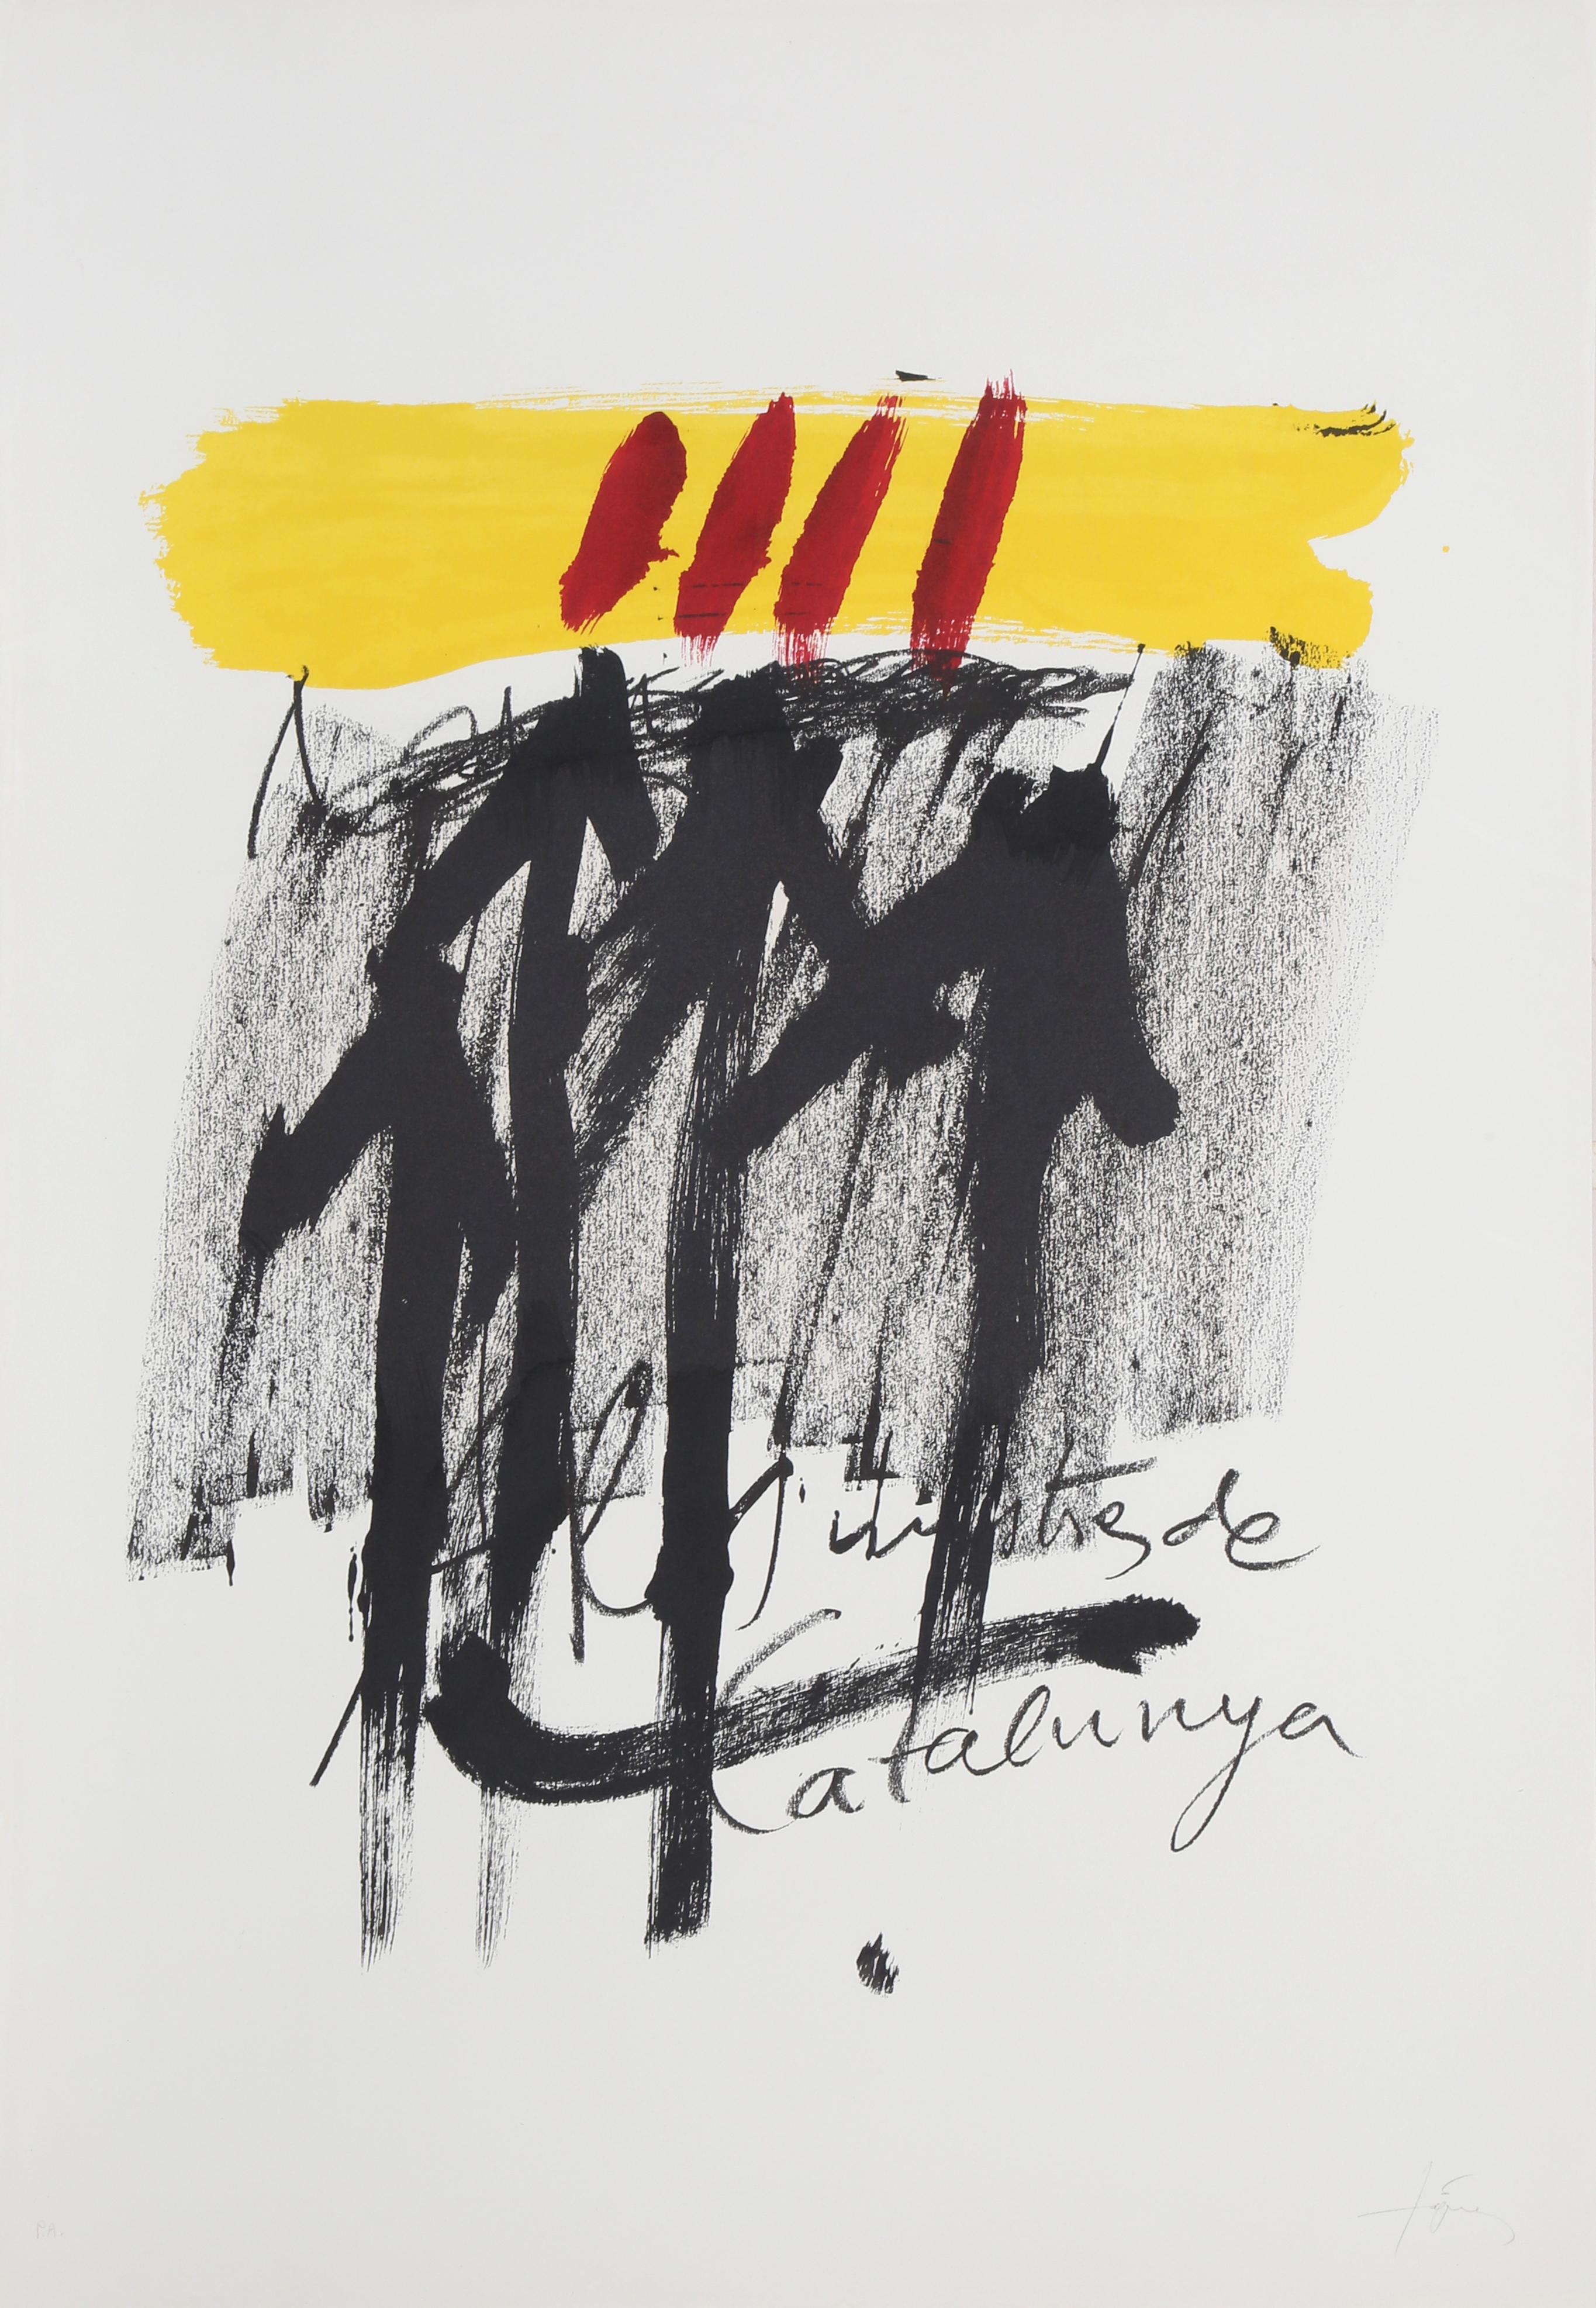 Antoni Tàpies Abstract Print - No. 6 from "Als Mestres de Catalunya, " Lithograph by Antoni Tapies, 1974